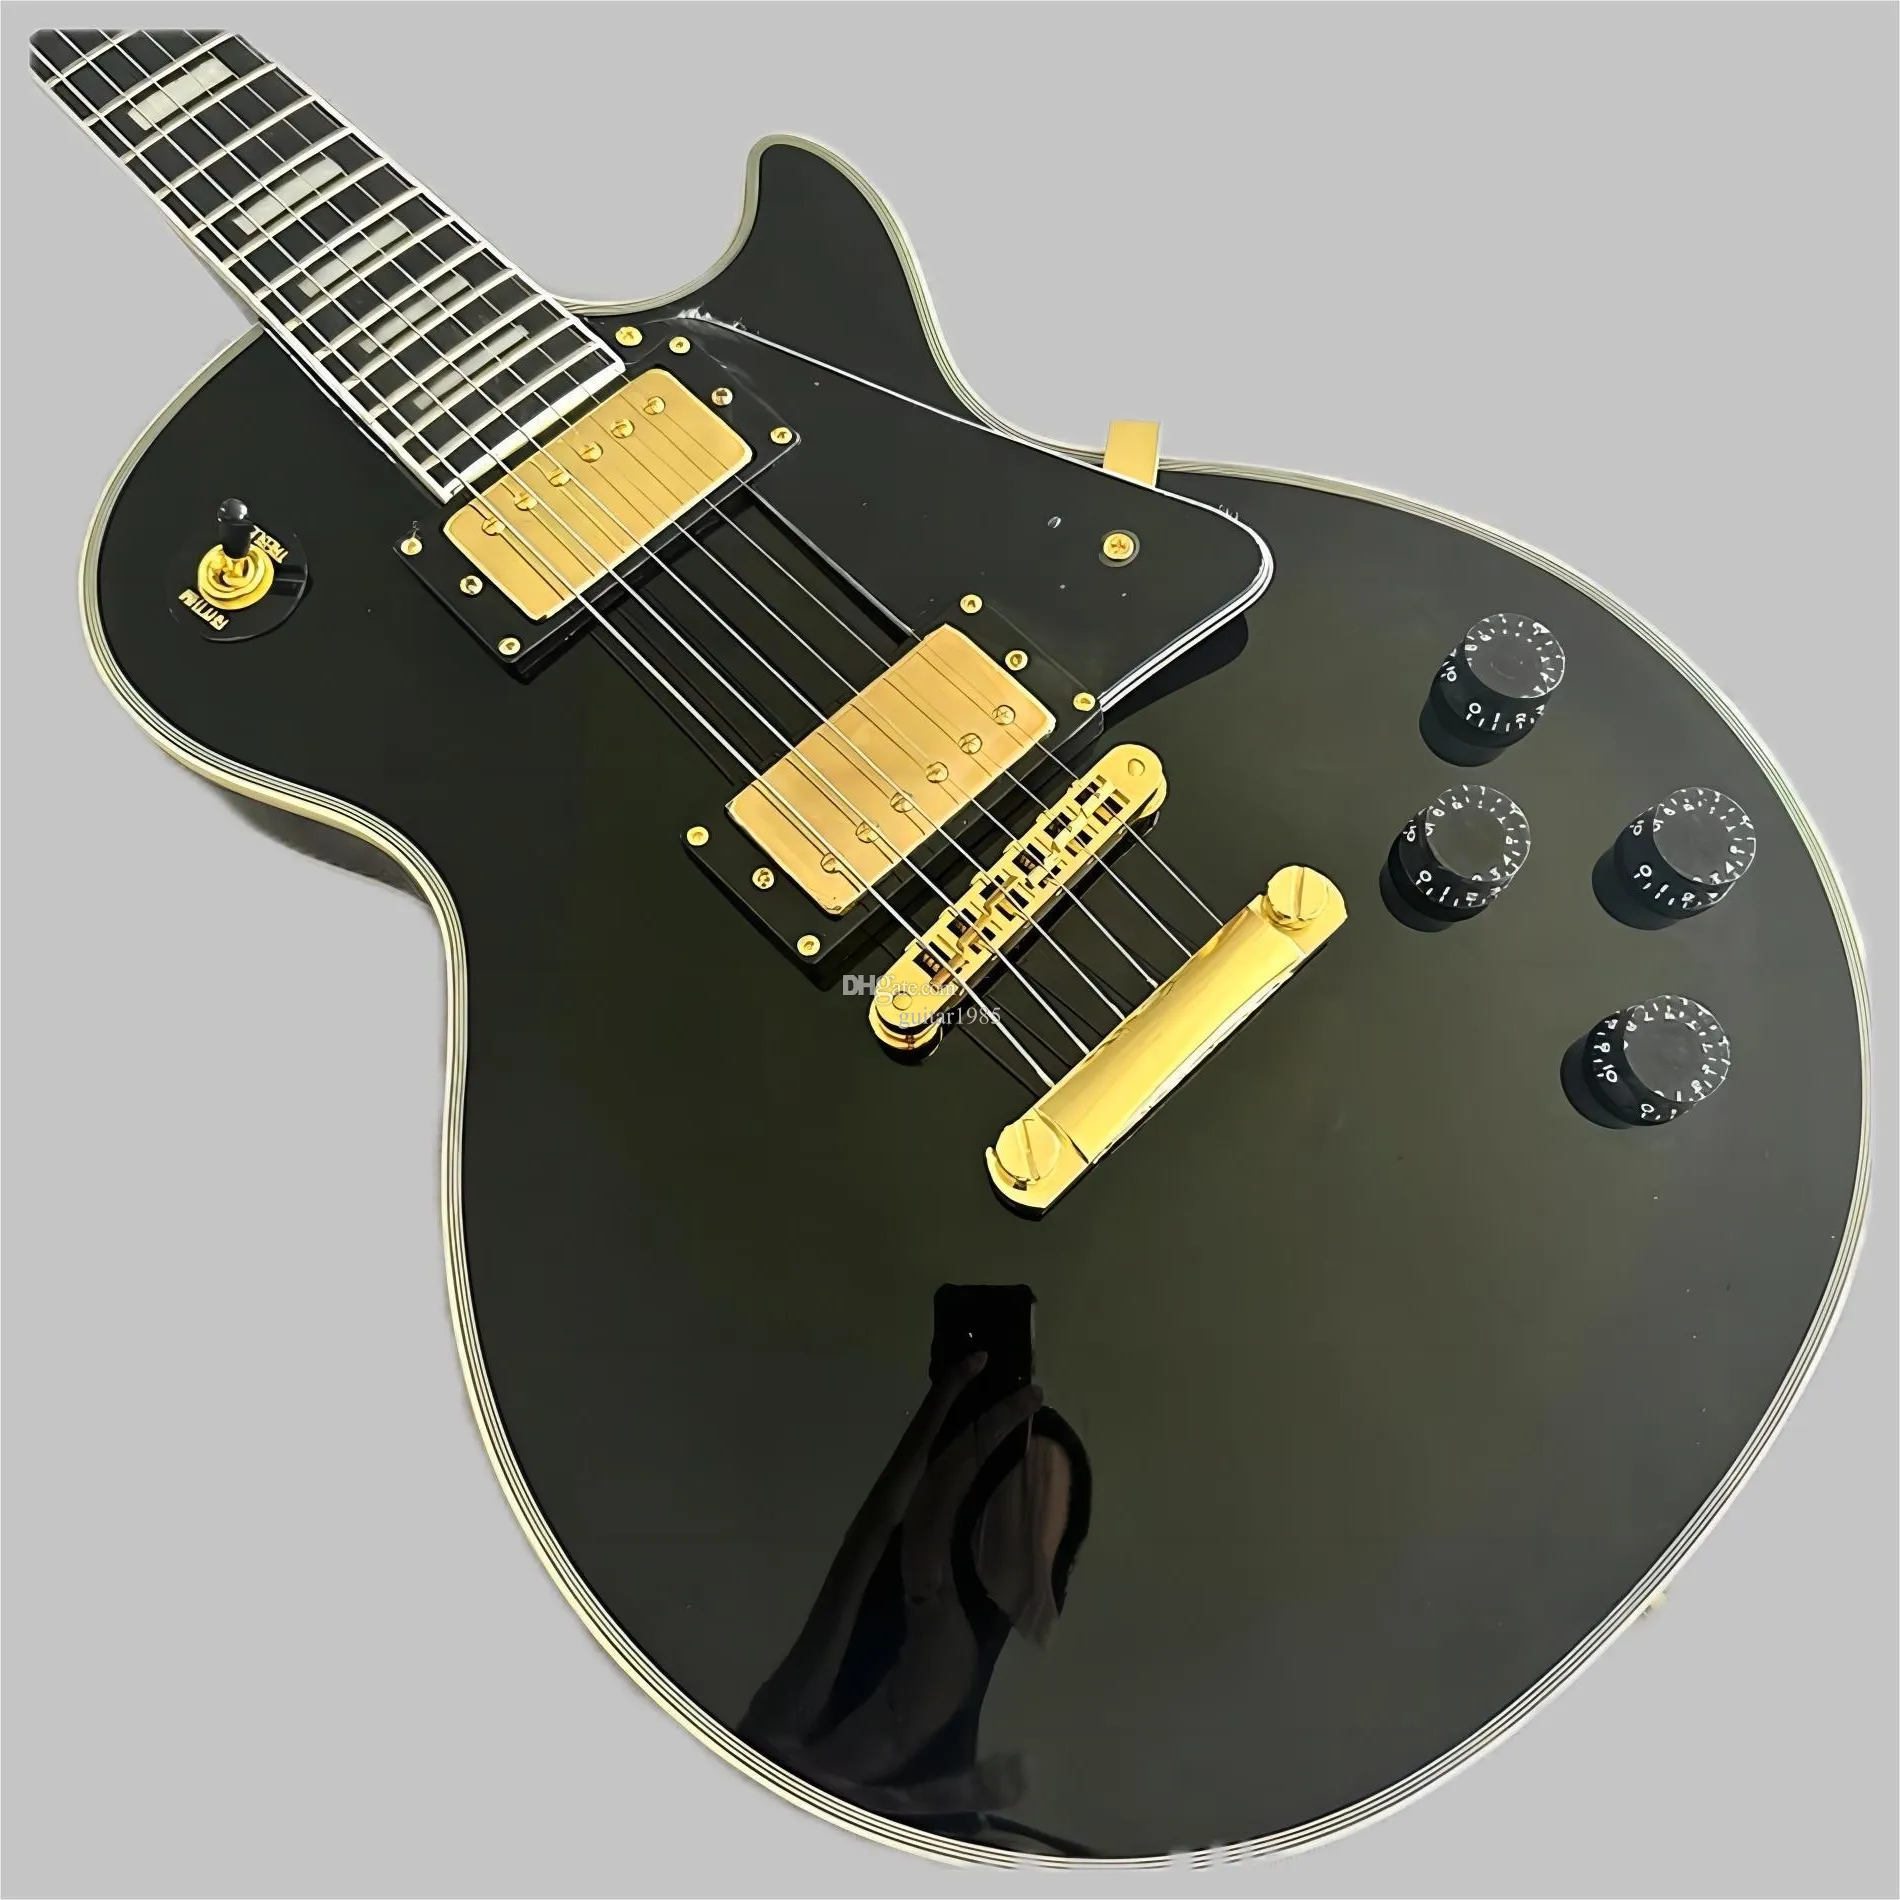 Anpassad butik, tillverkad i Kina, anpassade elektriska gitarrer av hög kvalitet, ebenholts fingerplatta, Tune-O-Matic Bridge, gratis 2589